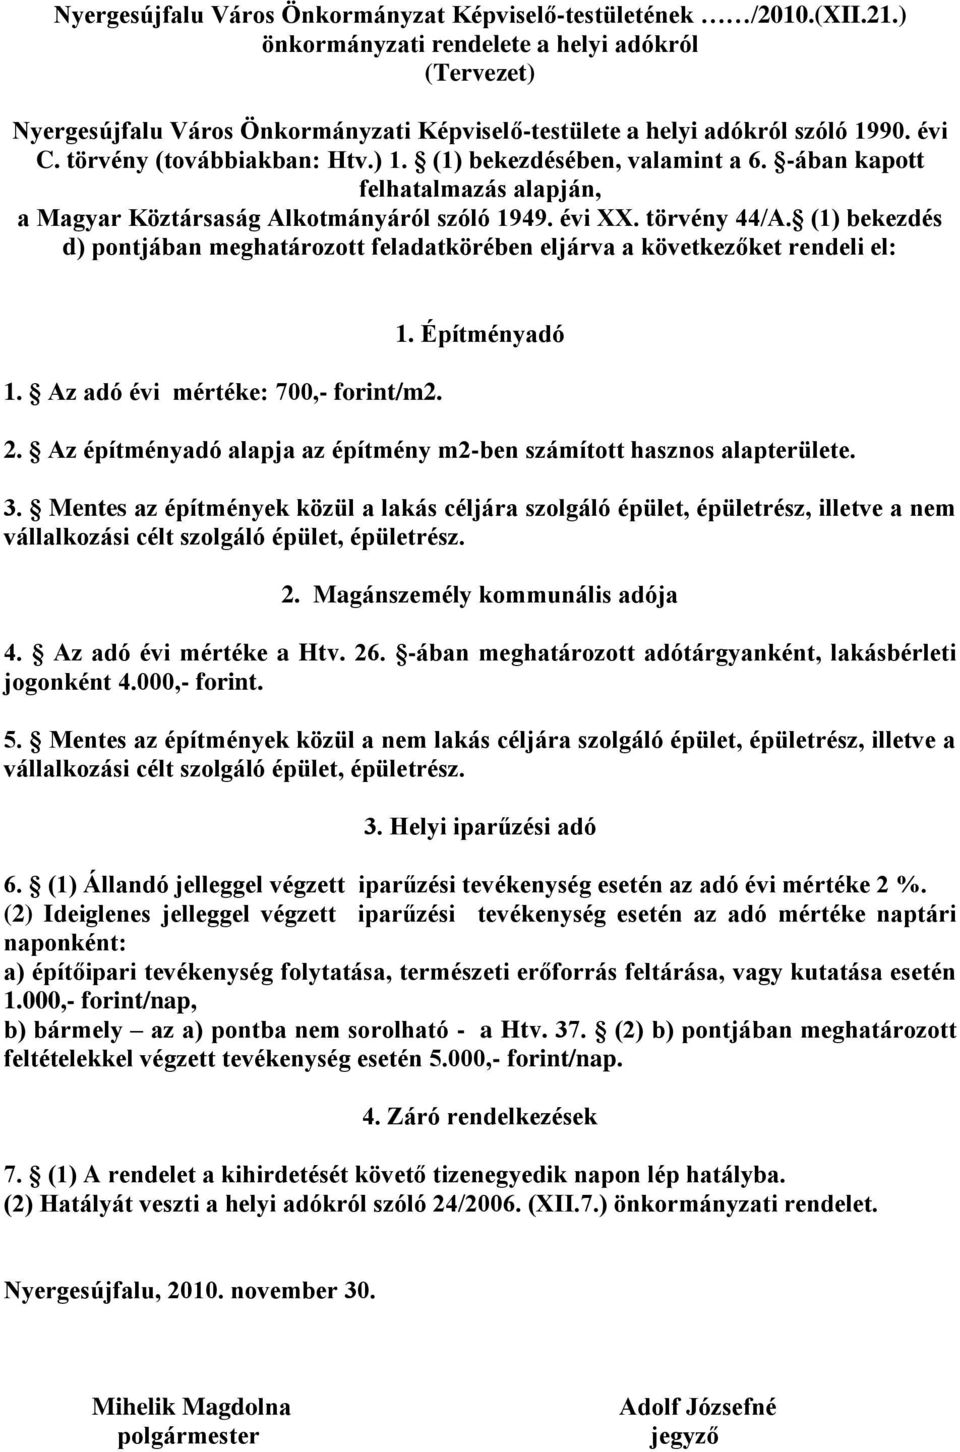 (1) bekezdésében, valamint a 6. -ában kapott felhatalmazás alapján, a Magyar Köztársaság Alkotmányáról szóló 1949. évi XX. törvény 44/A.